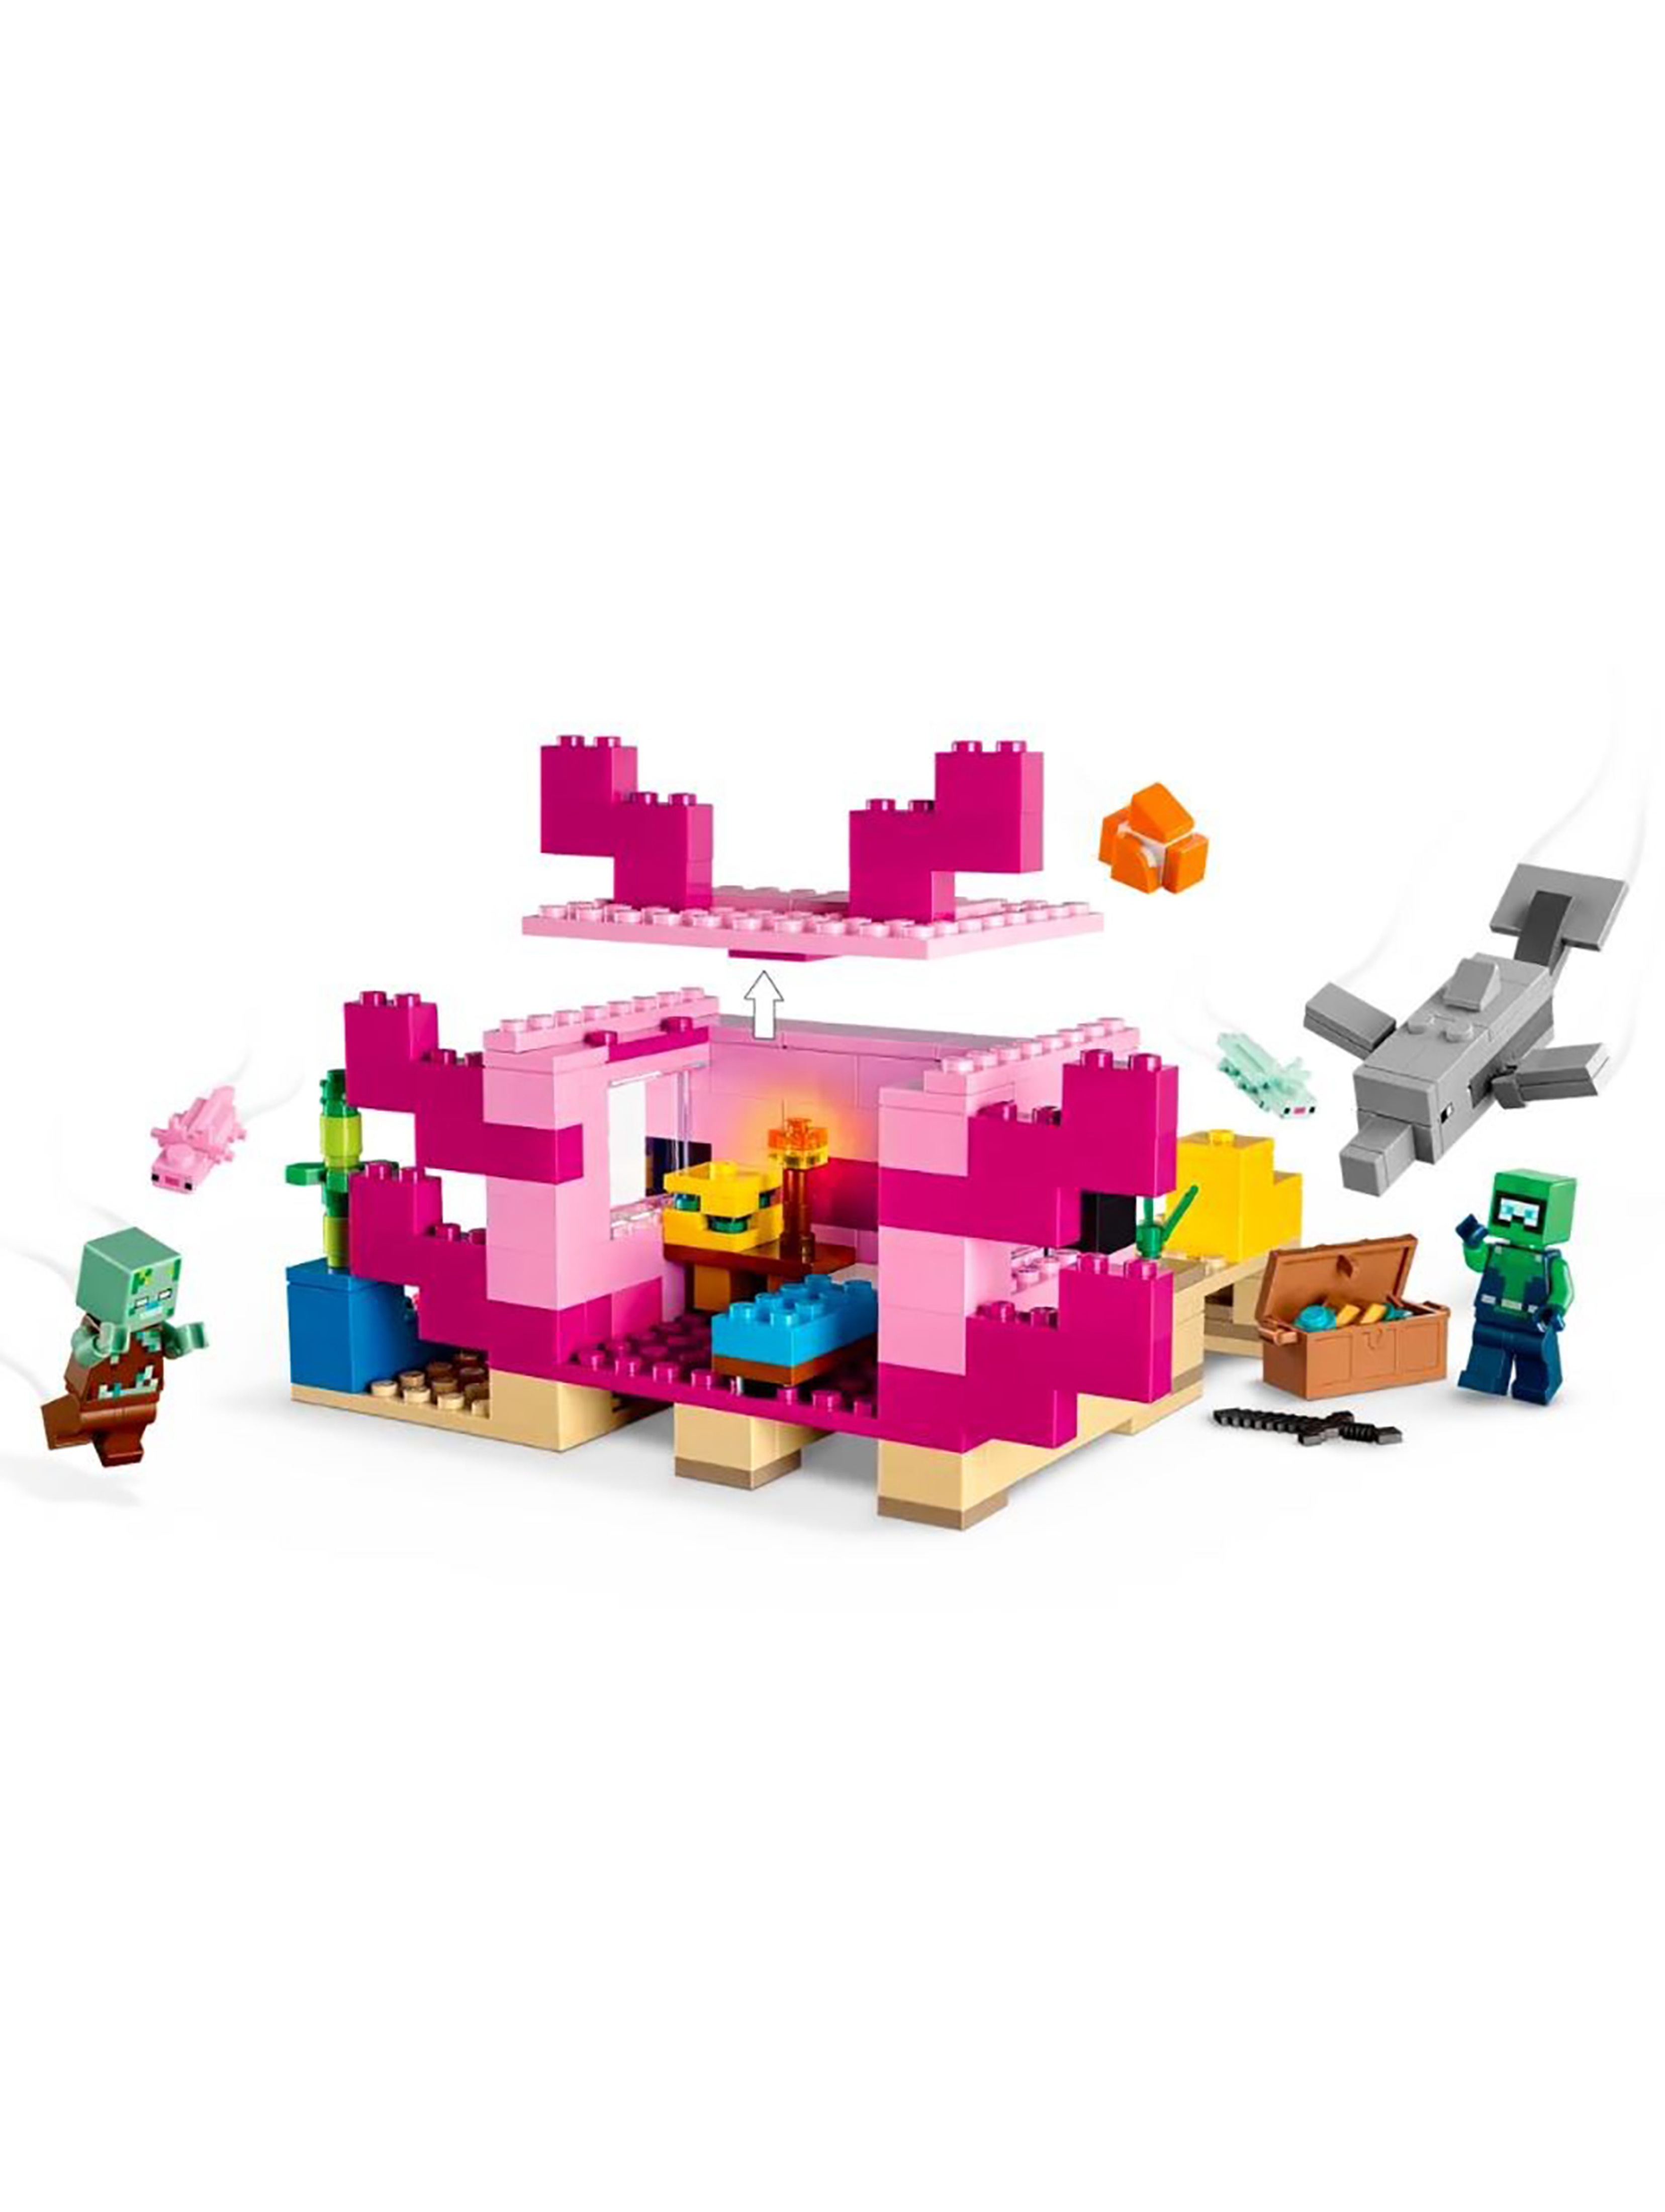 Klocki LEGO Minecraft 21247 Dom aksolotla - 242 elementy, wiek 7 +